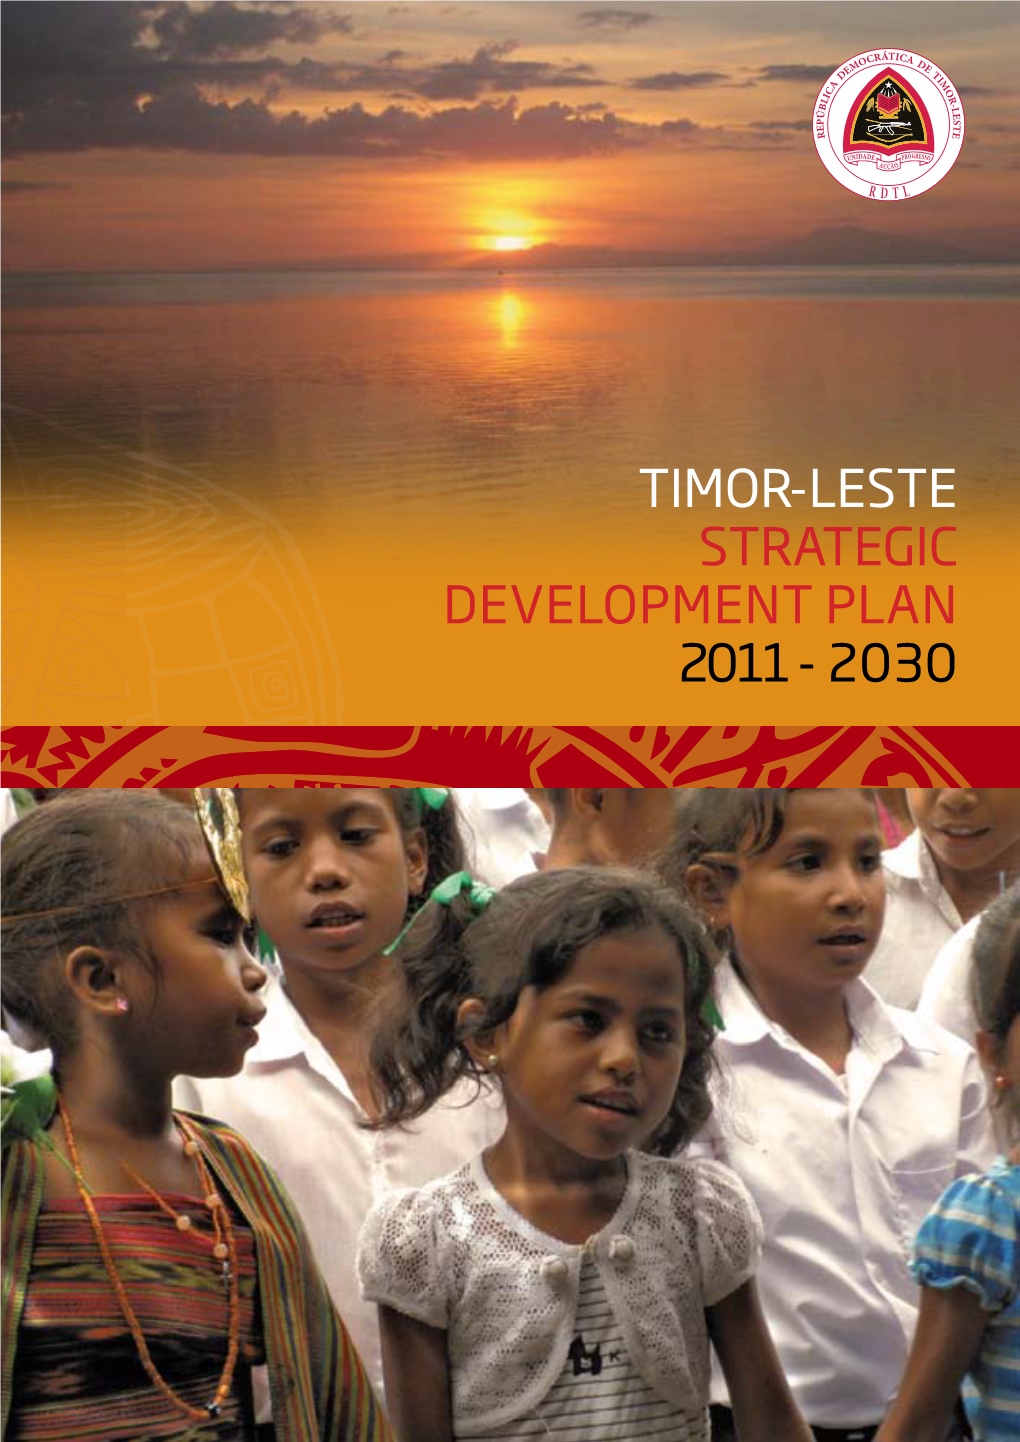 Timor-Leste Strategic Development Plan 2011 - 2030